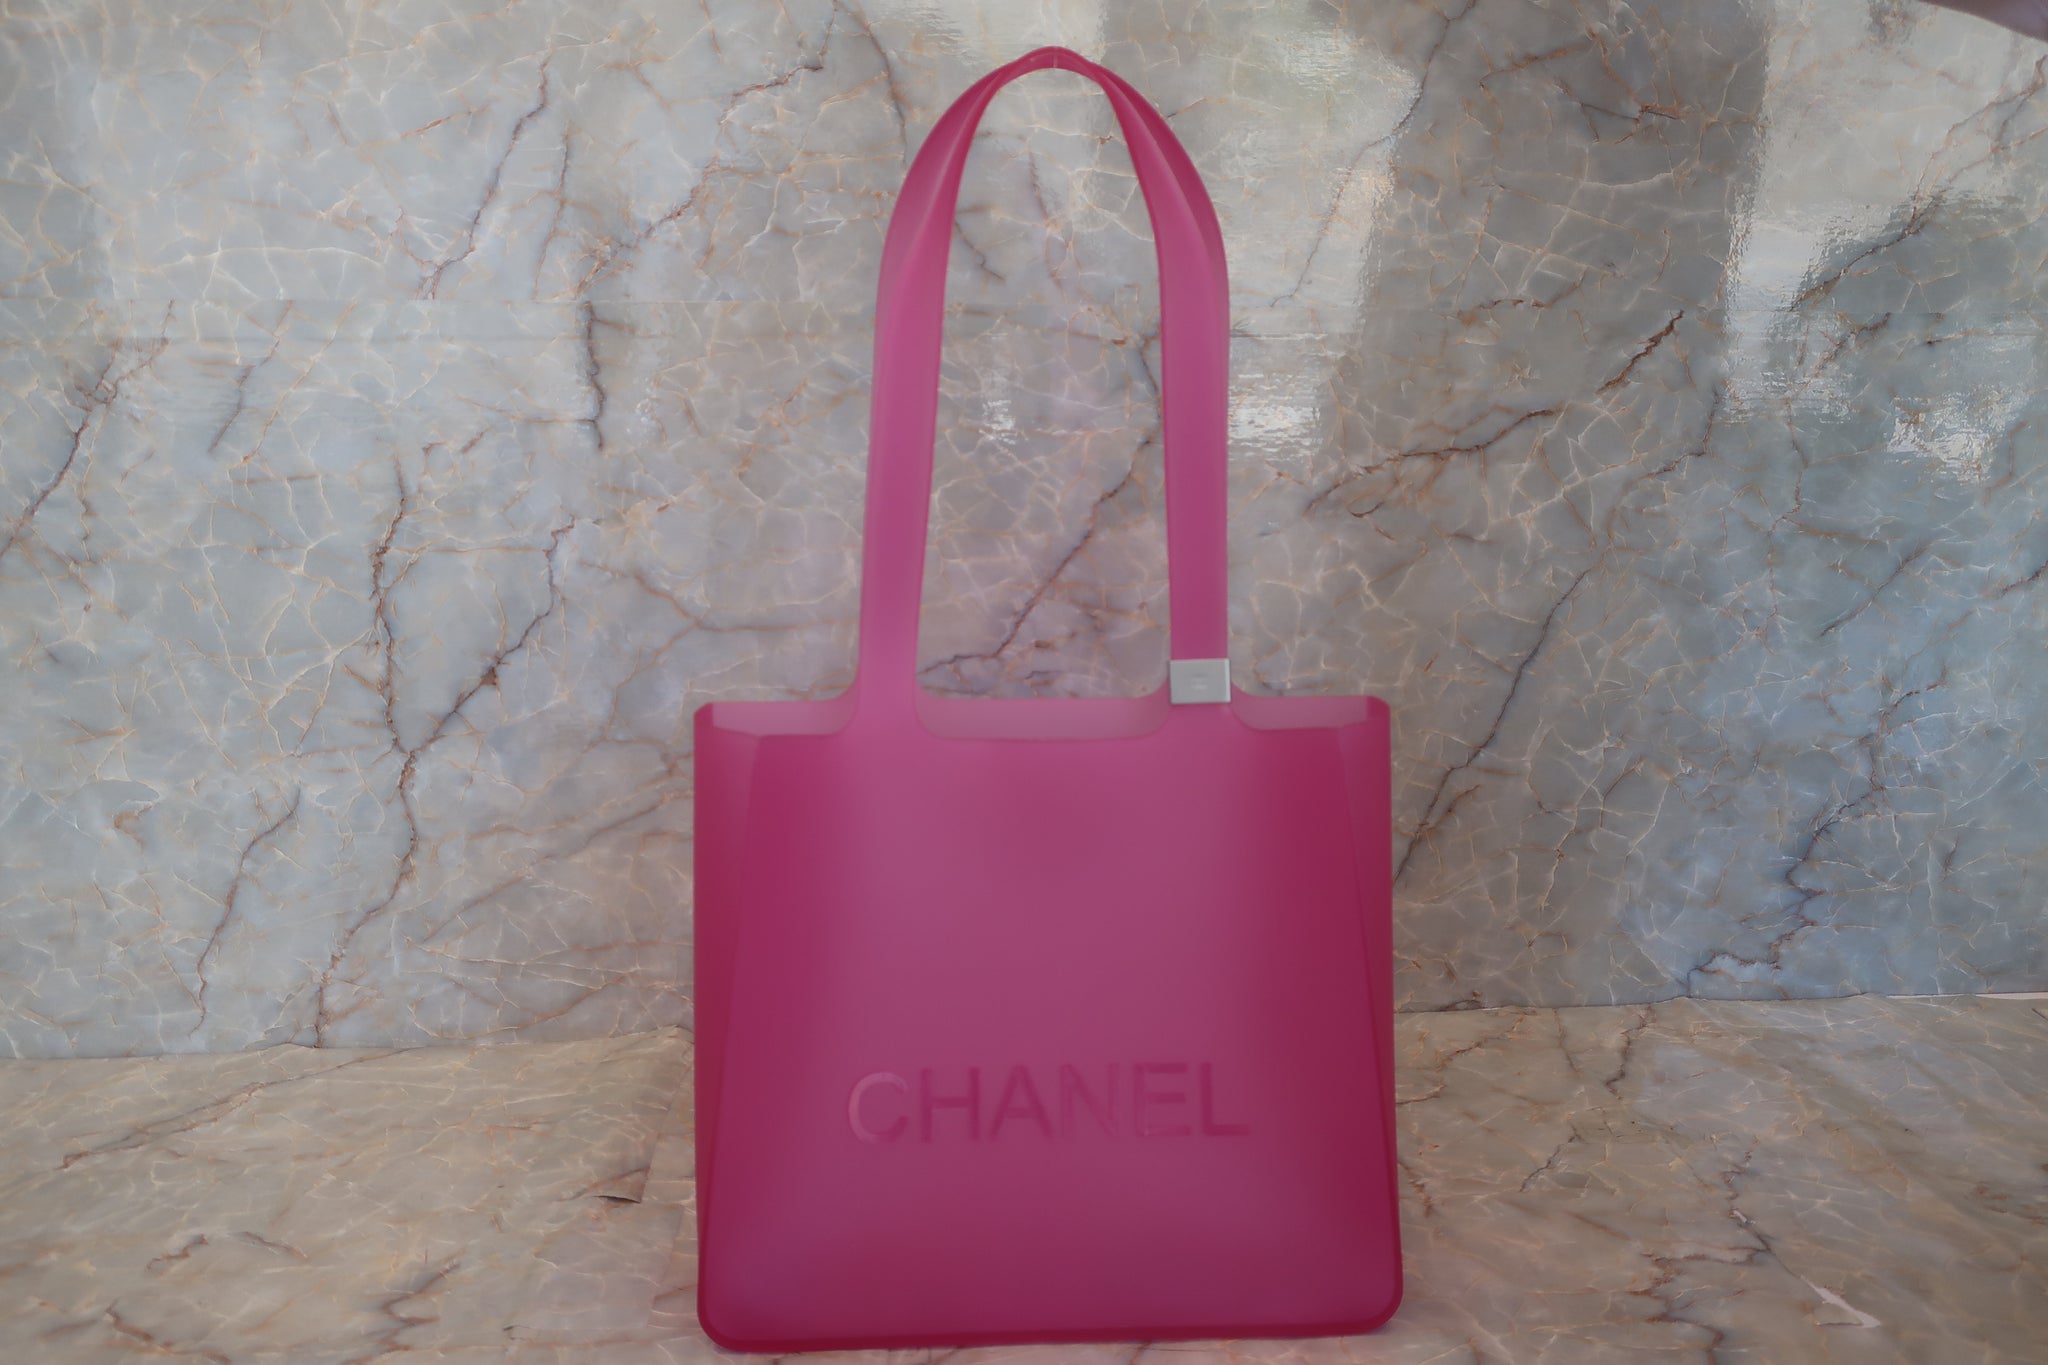 Chanel jelly rubber shopper tote 